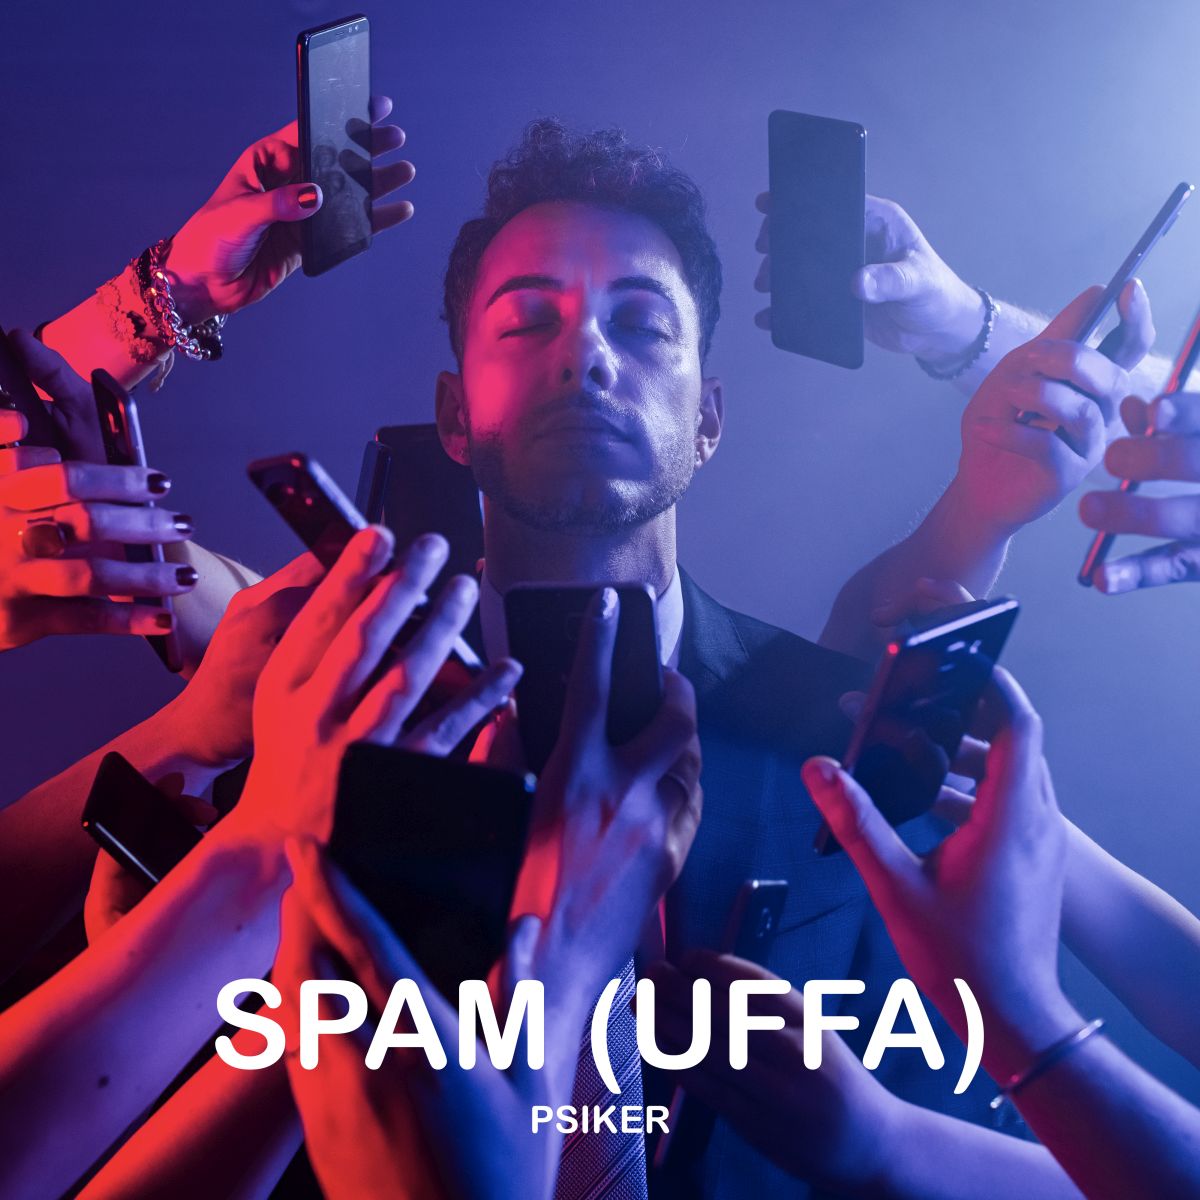 Un finance manager in musica, Psiker presenta Spam (uffa) il nuovo brano disponible dal 3 giugno